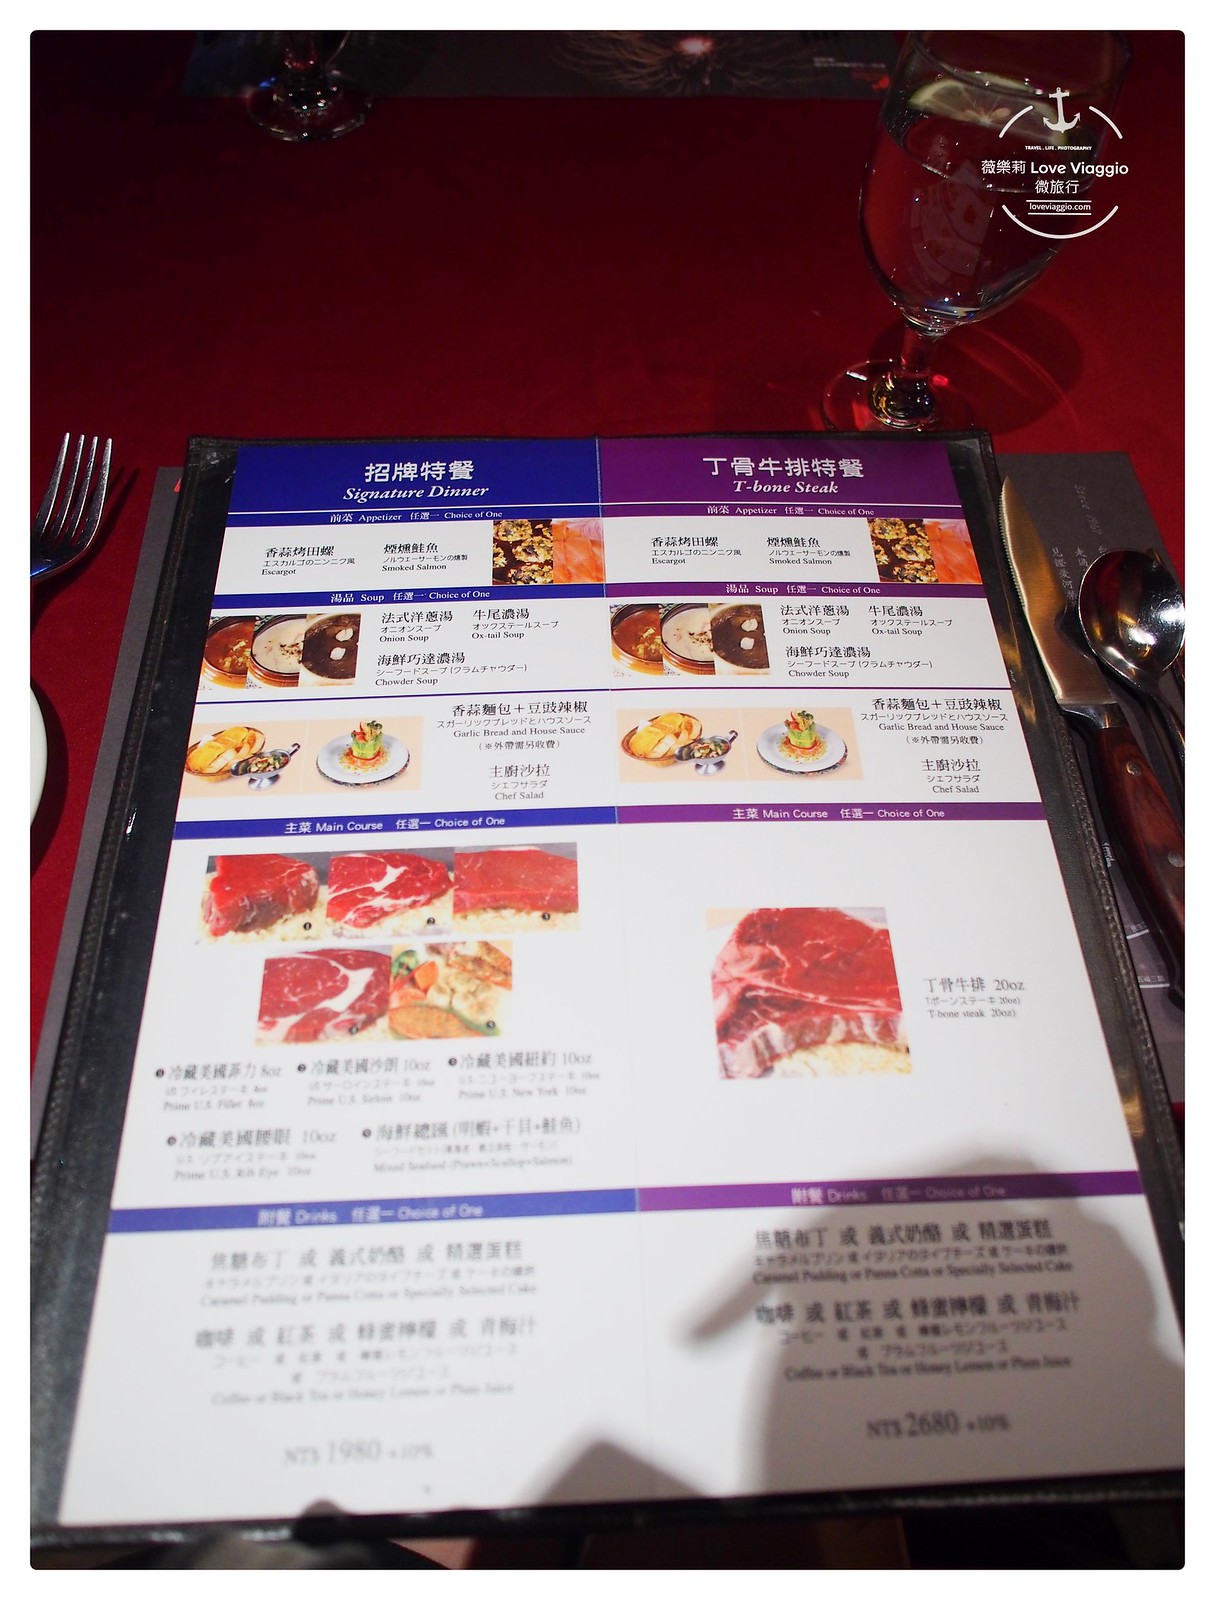 【高雄 Kaohsiung】新統一泓品牛排 愛河畔歐式古典風華的50年歷史老牌牛排西餐廳 @薇樂莉 Love Viaggio | 旅行.生活.攝影